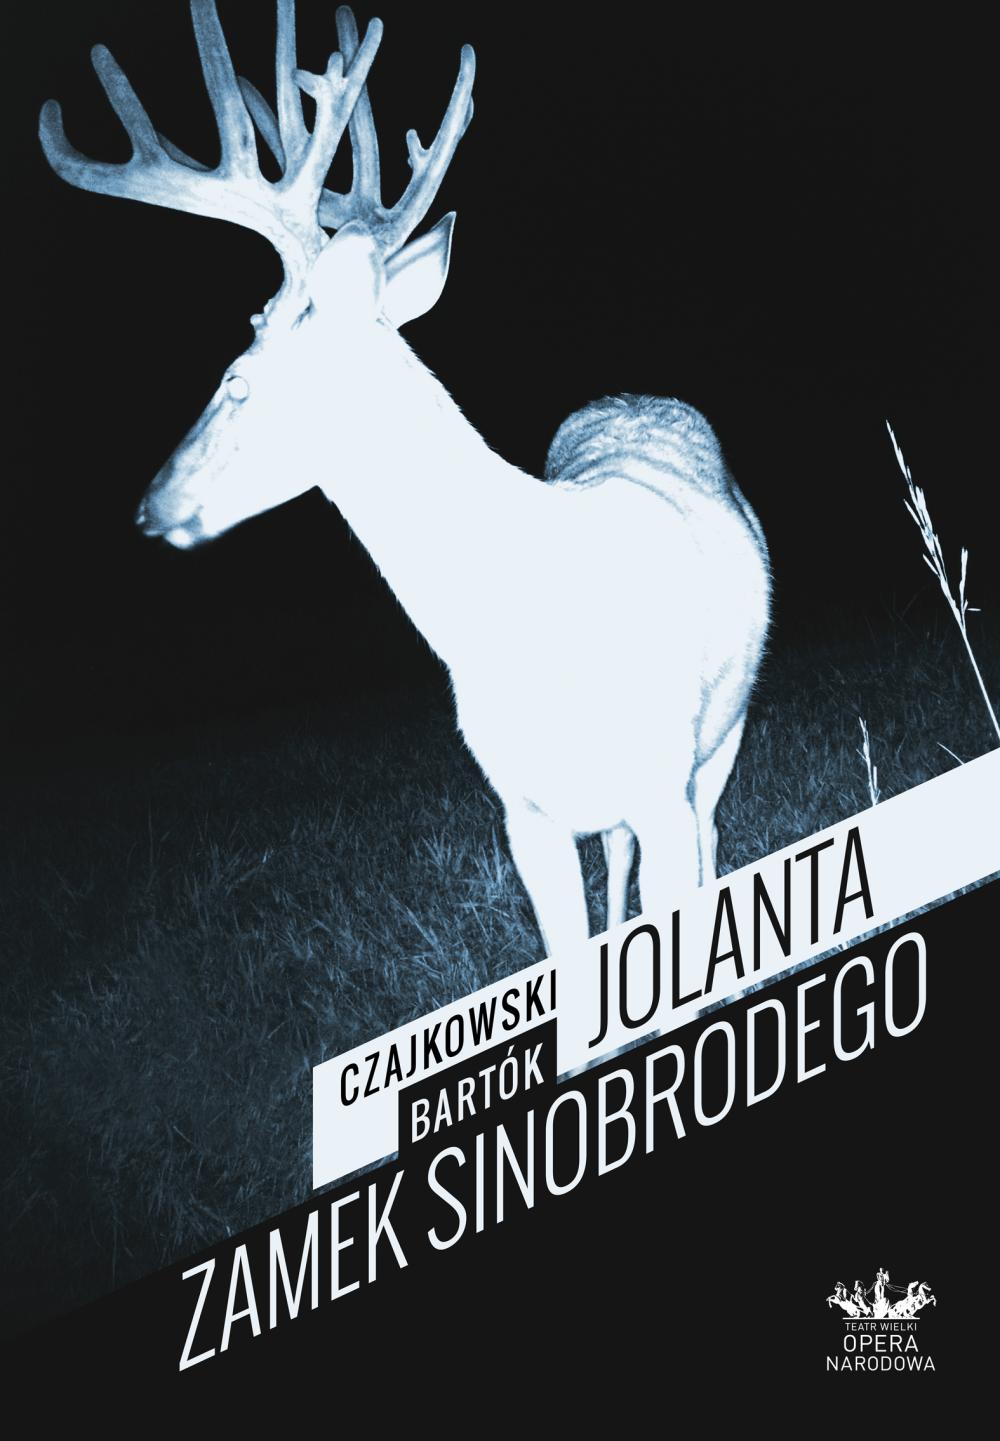 Plakat „Jolanta” / Zamek Sinobrodego”, Piotr Czajkowski / Béla Bartók premiera 2013-12-13